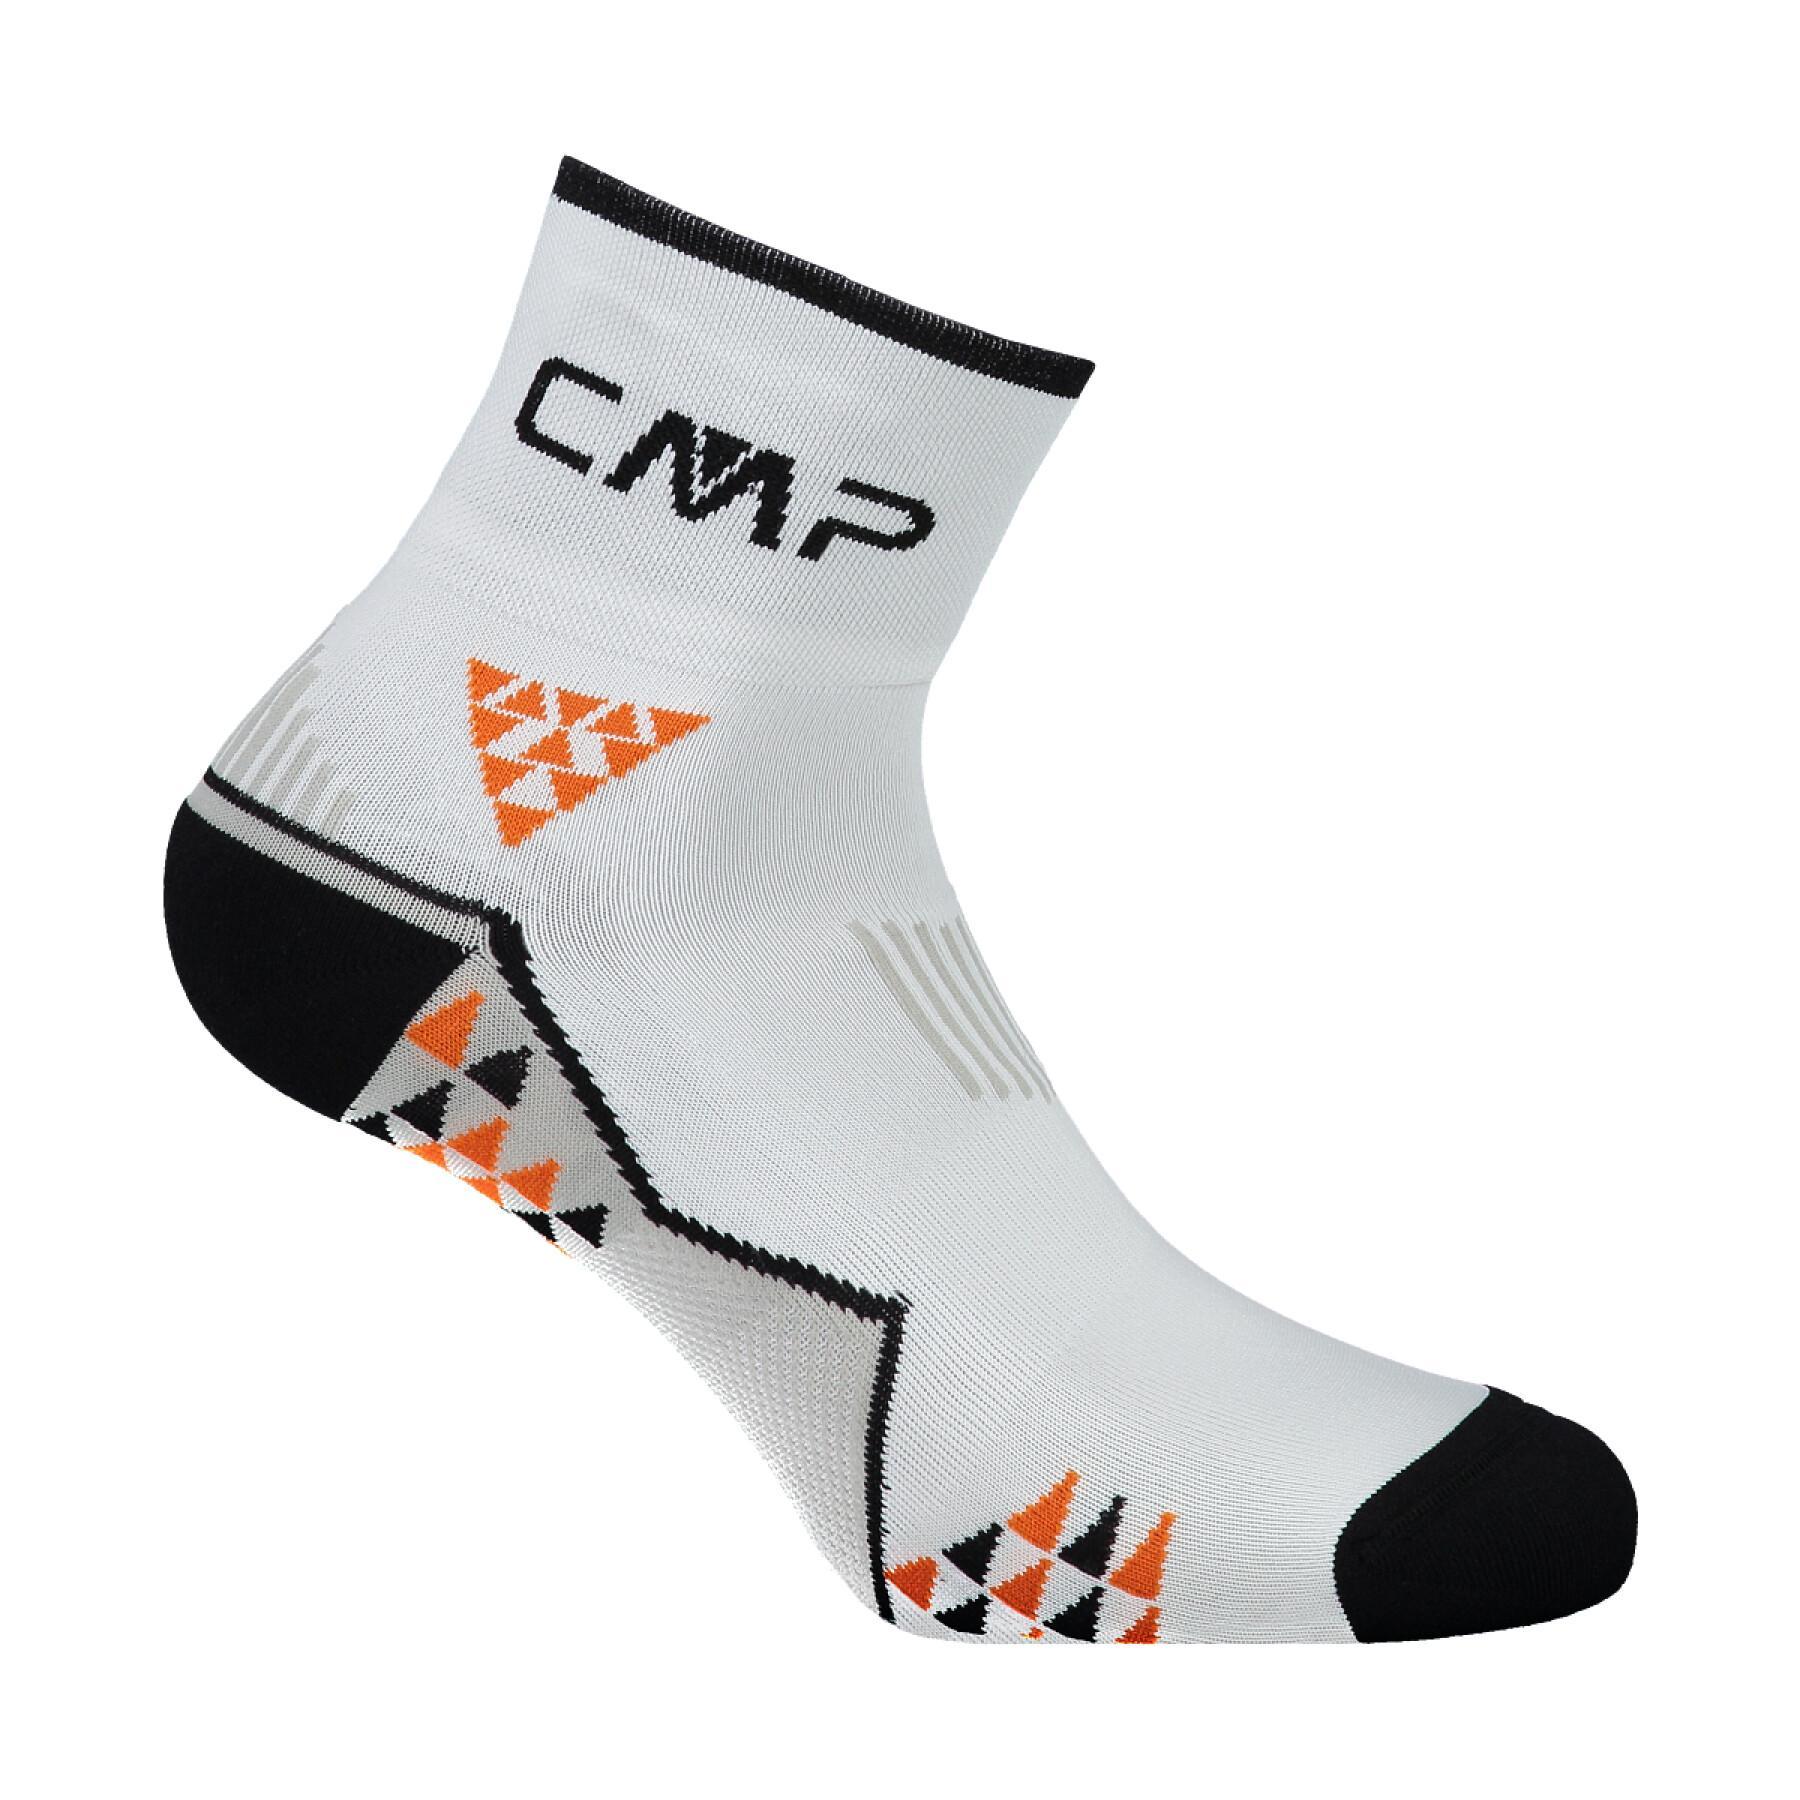 Socks CMP Skinlife